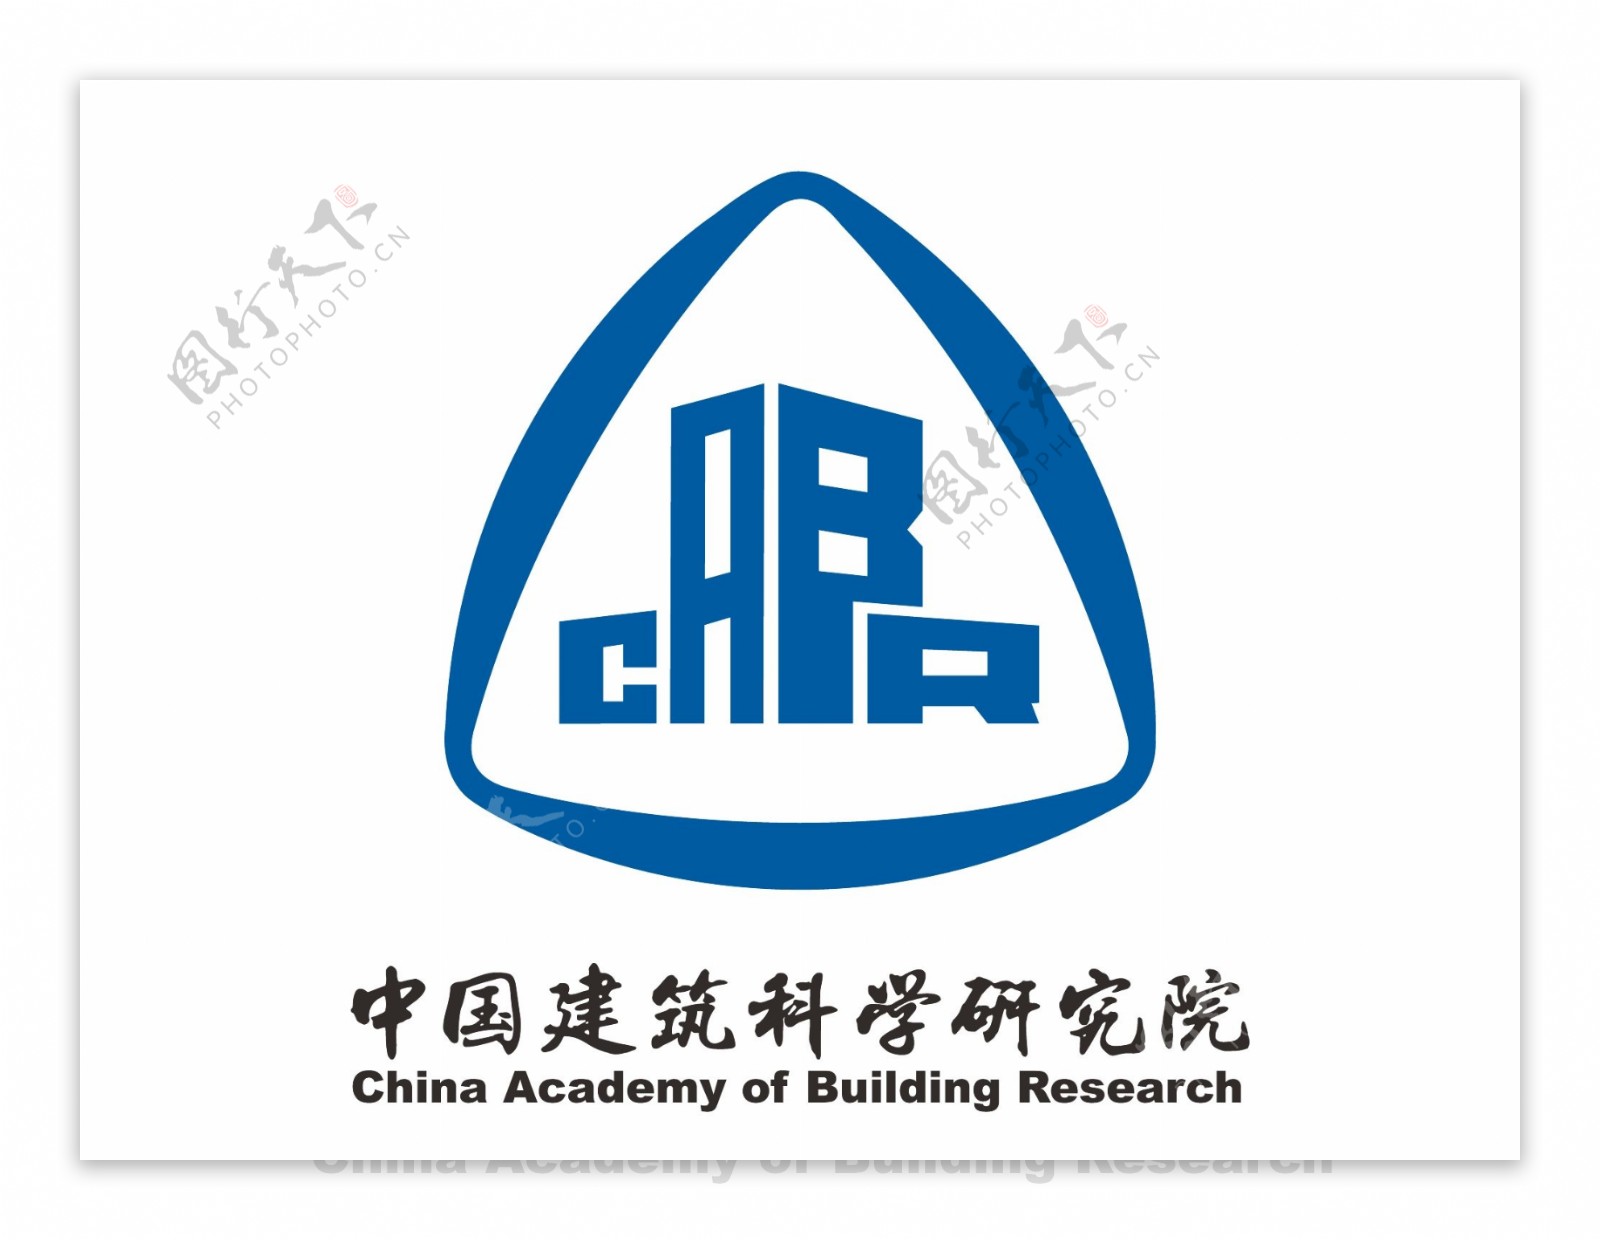 中国建筑科学研究院logo